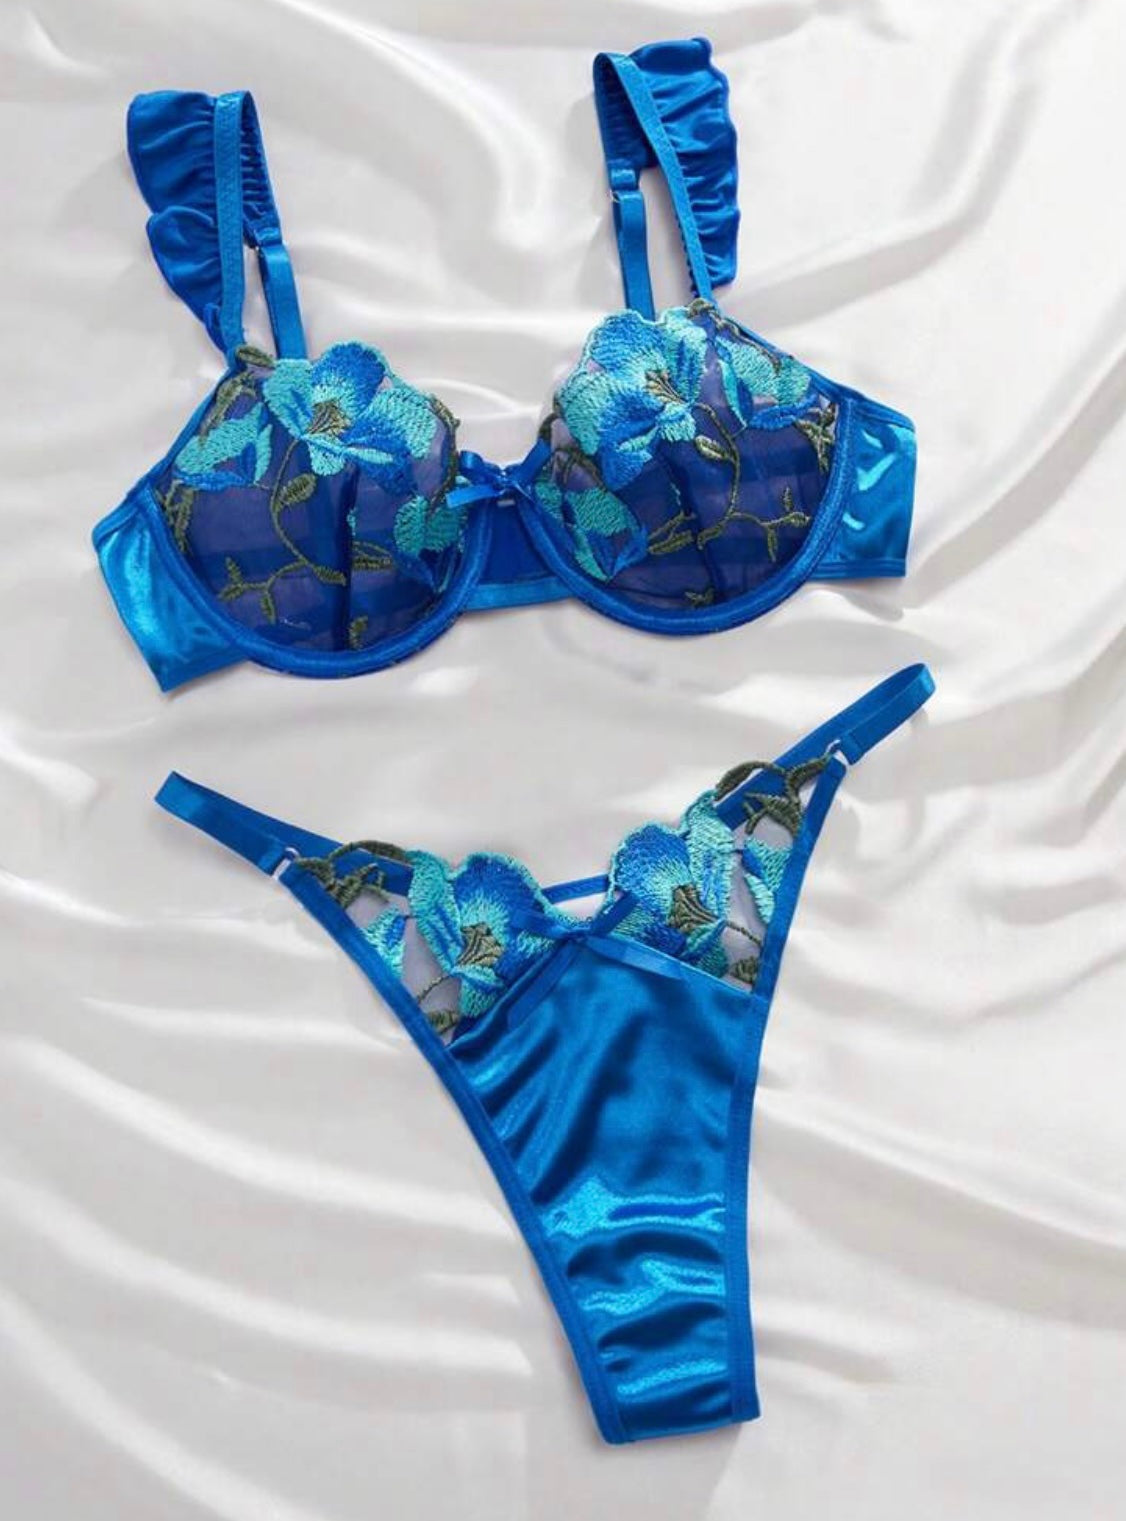 blue lingerie silk